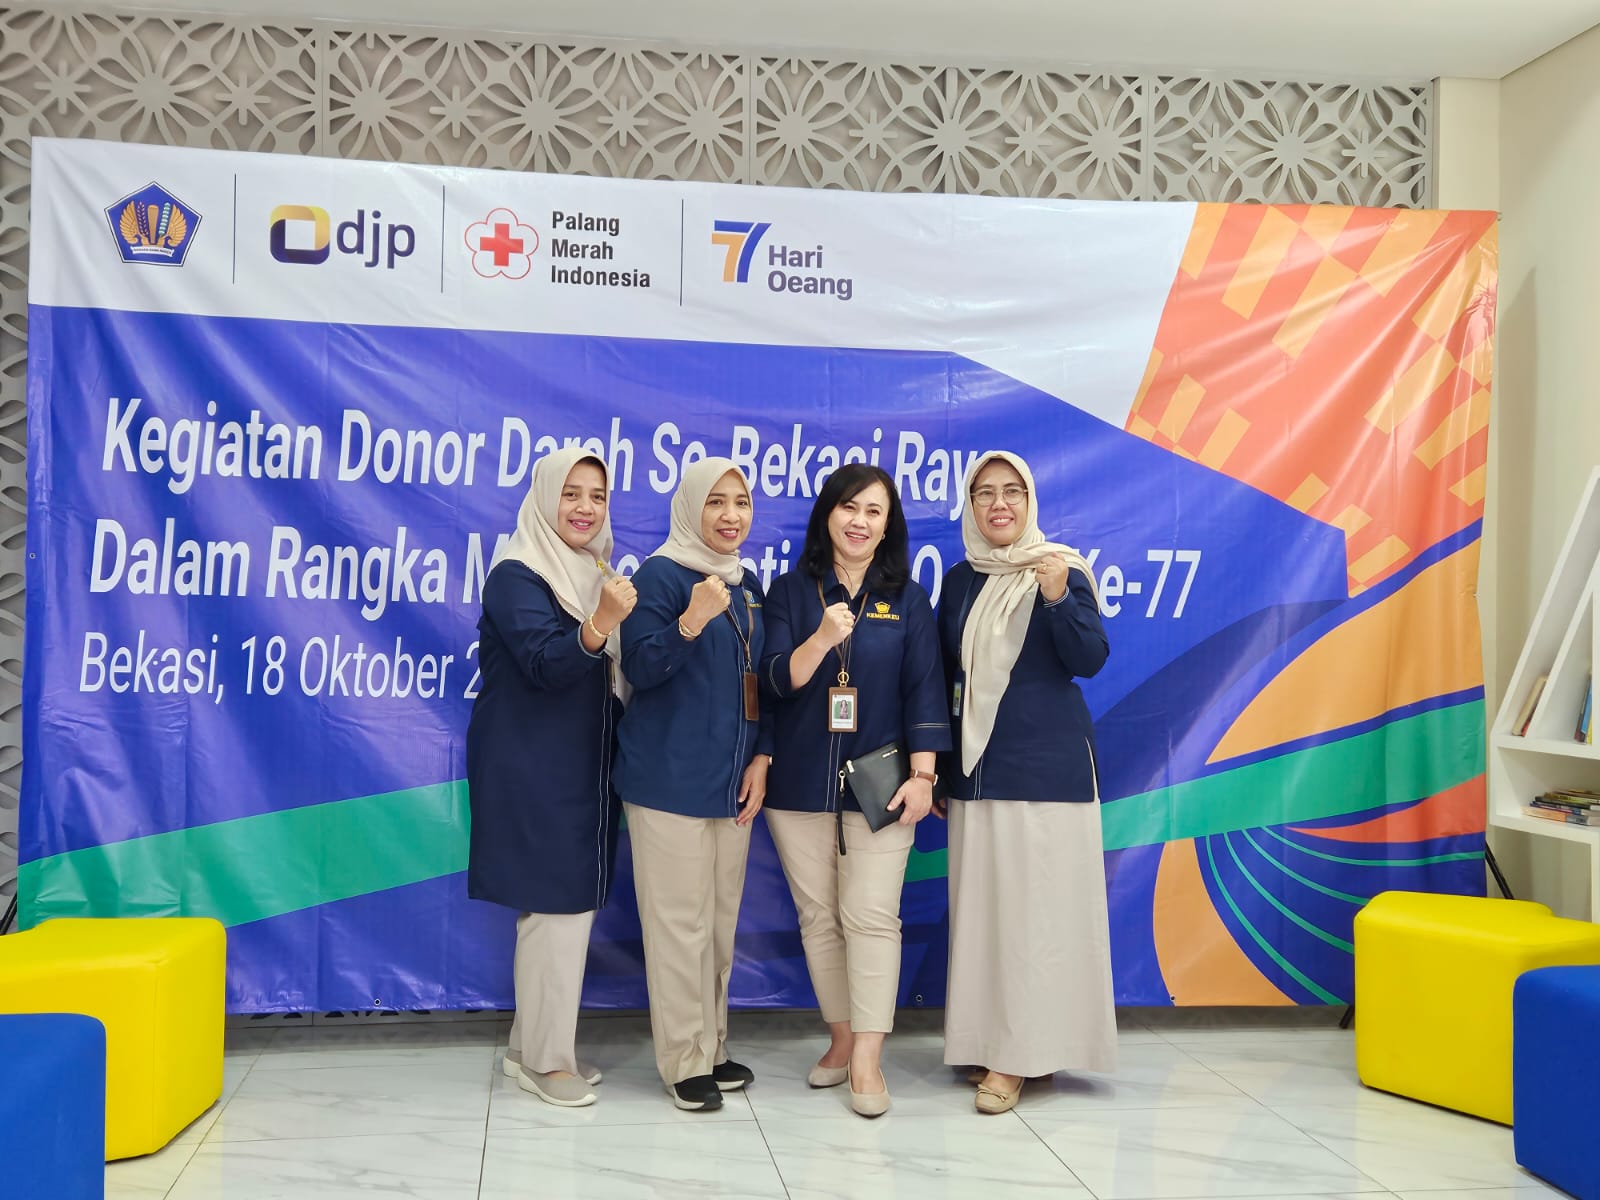 Peduli Sesama, KPKNL Bekasi Berpartisipasi dalam Kegiatan Donor Darah